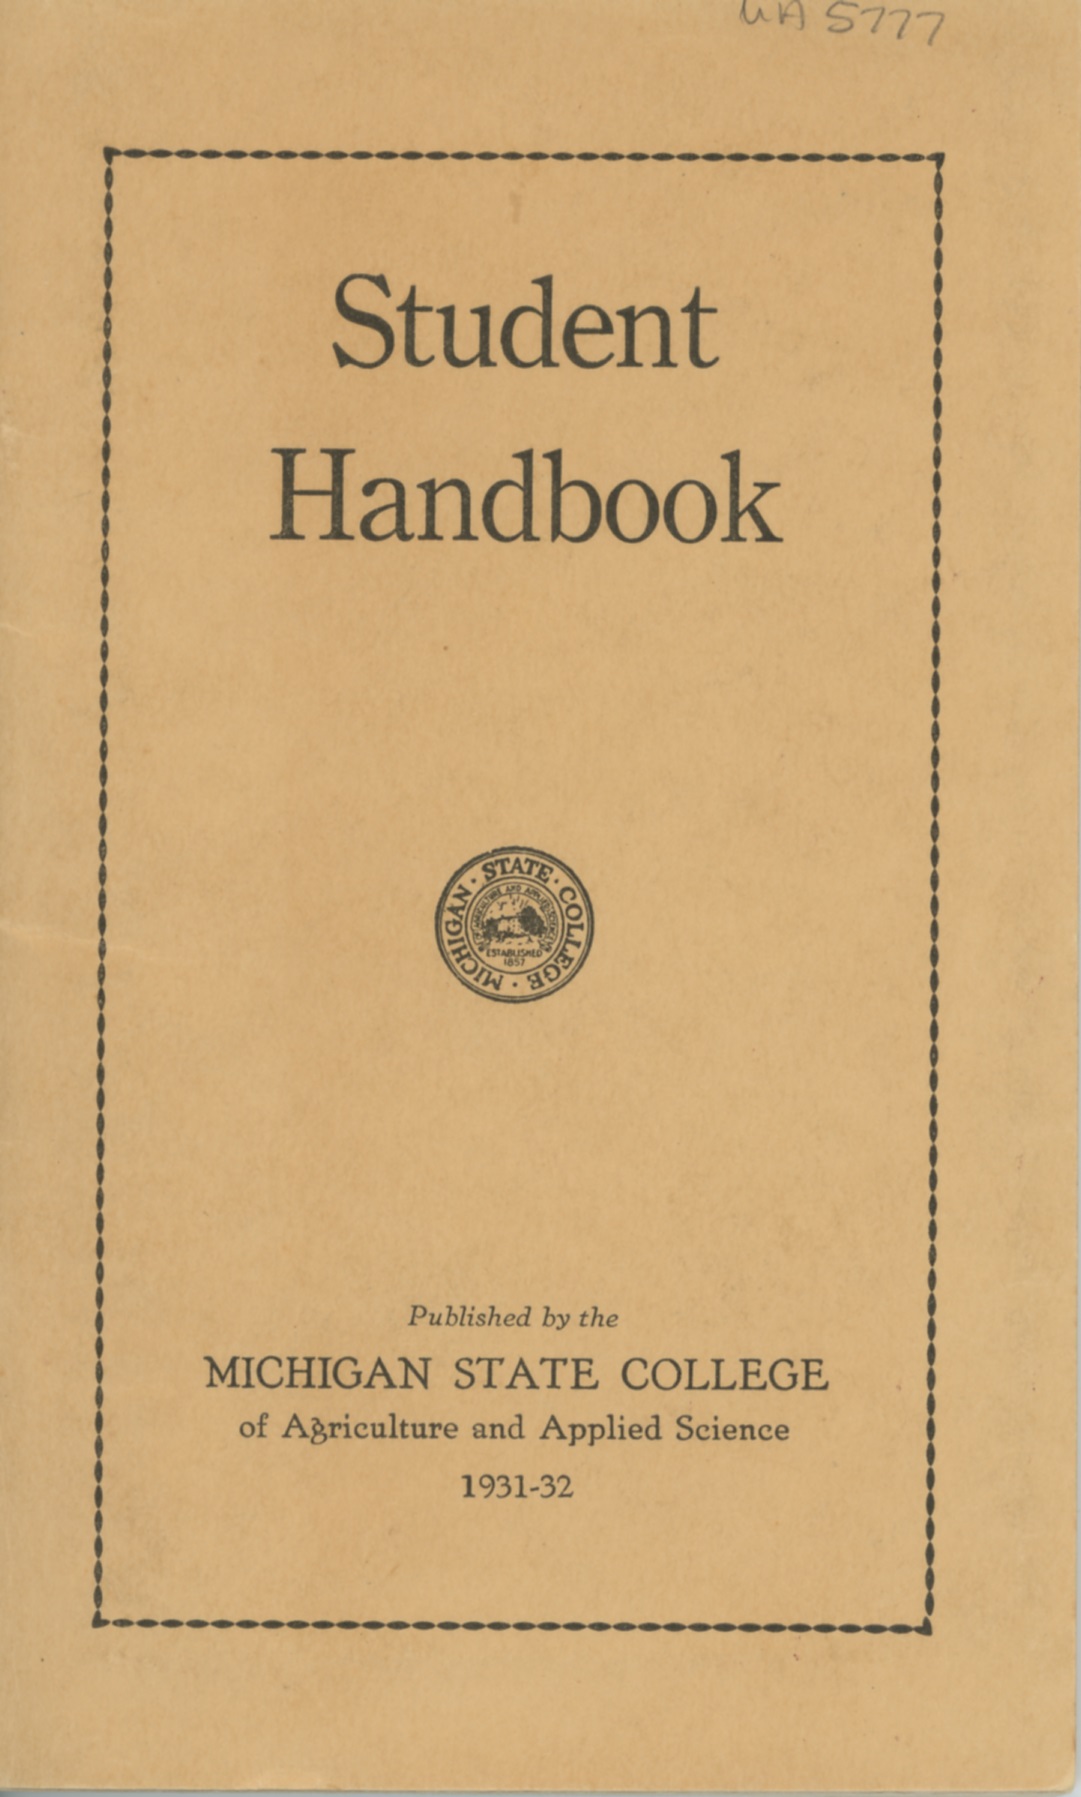 Student Handbook, 1931-1932